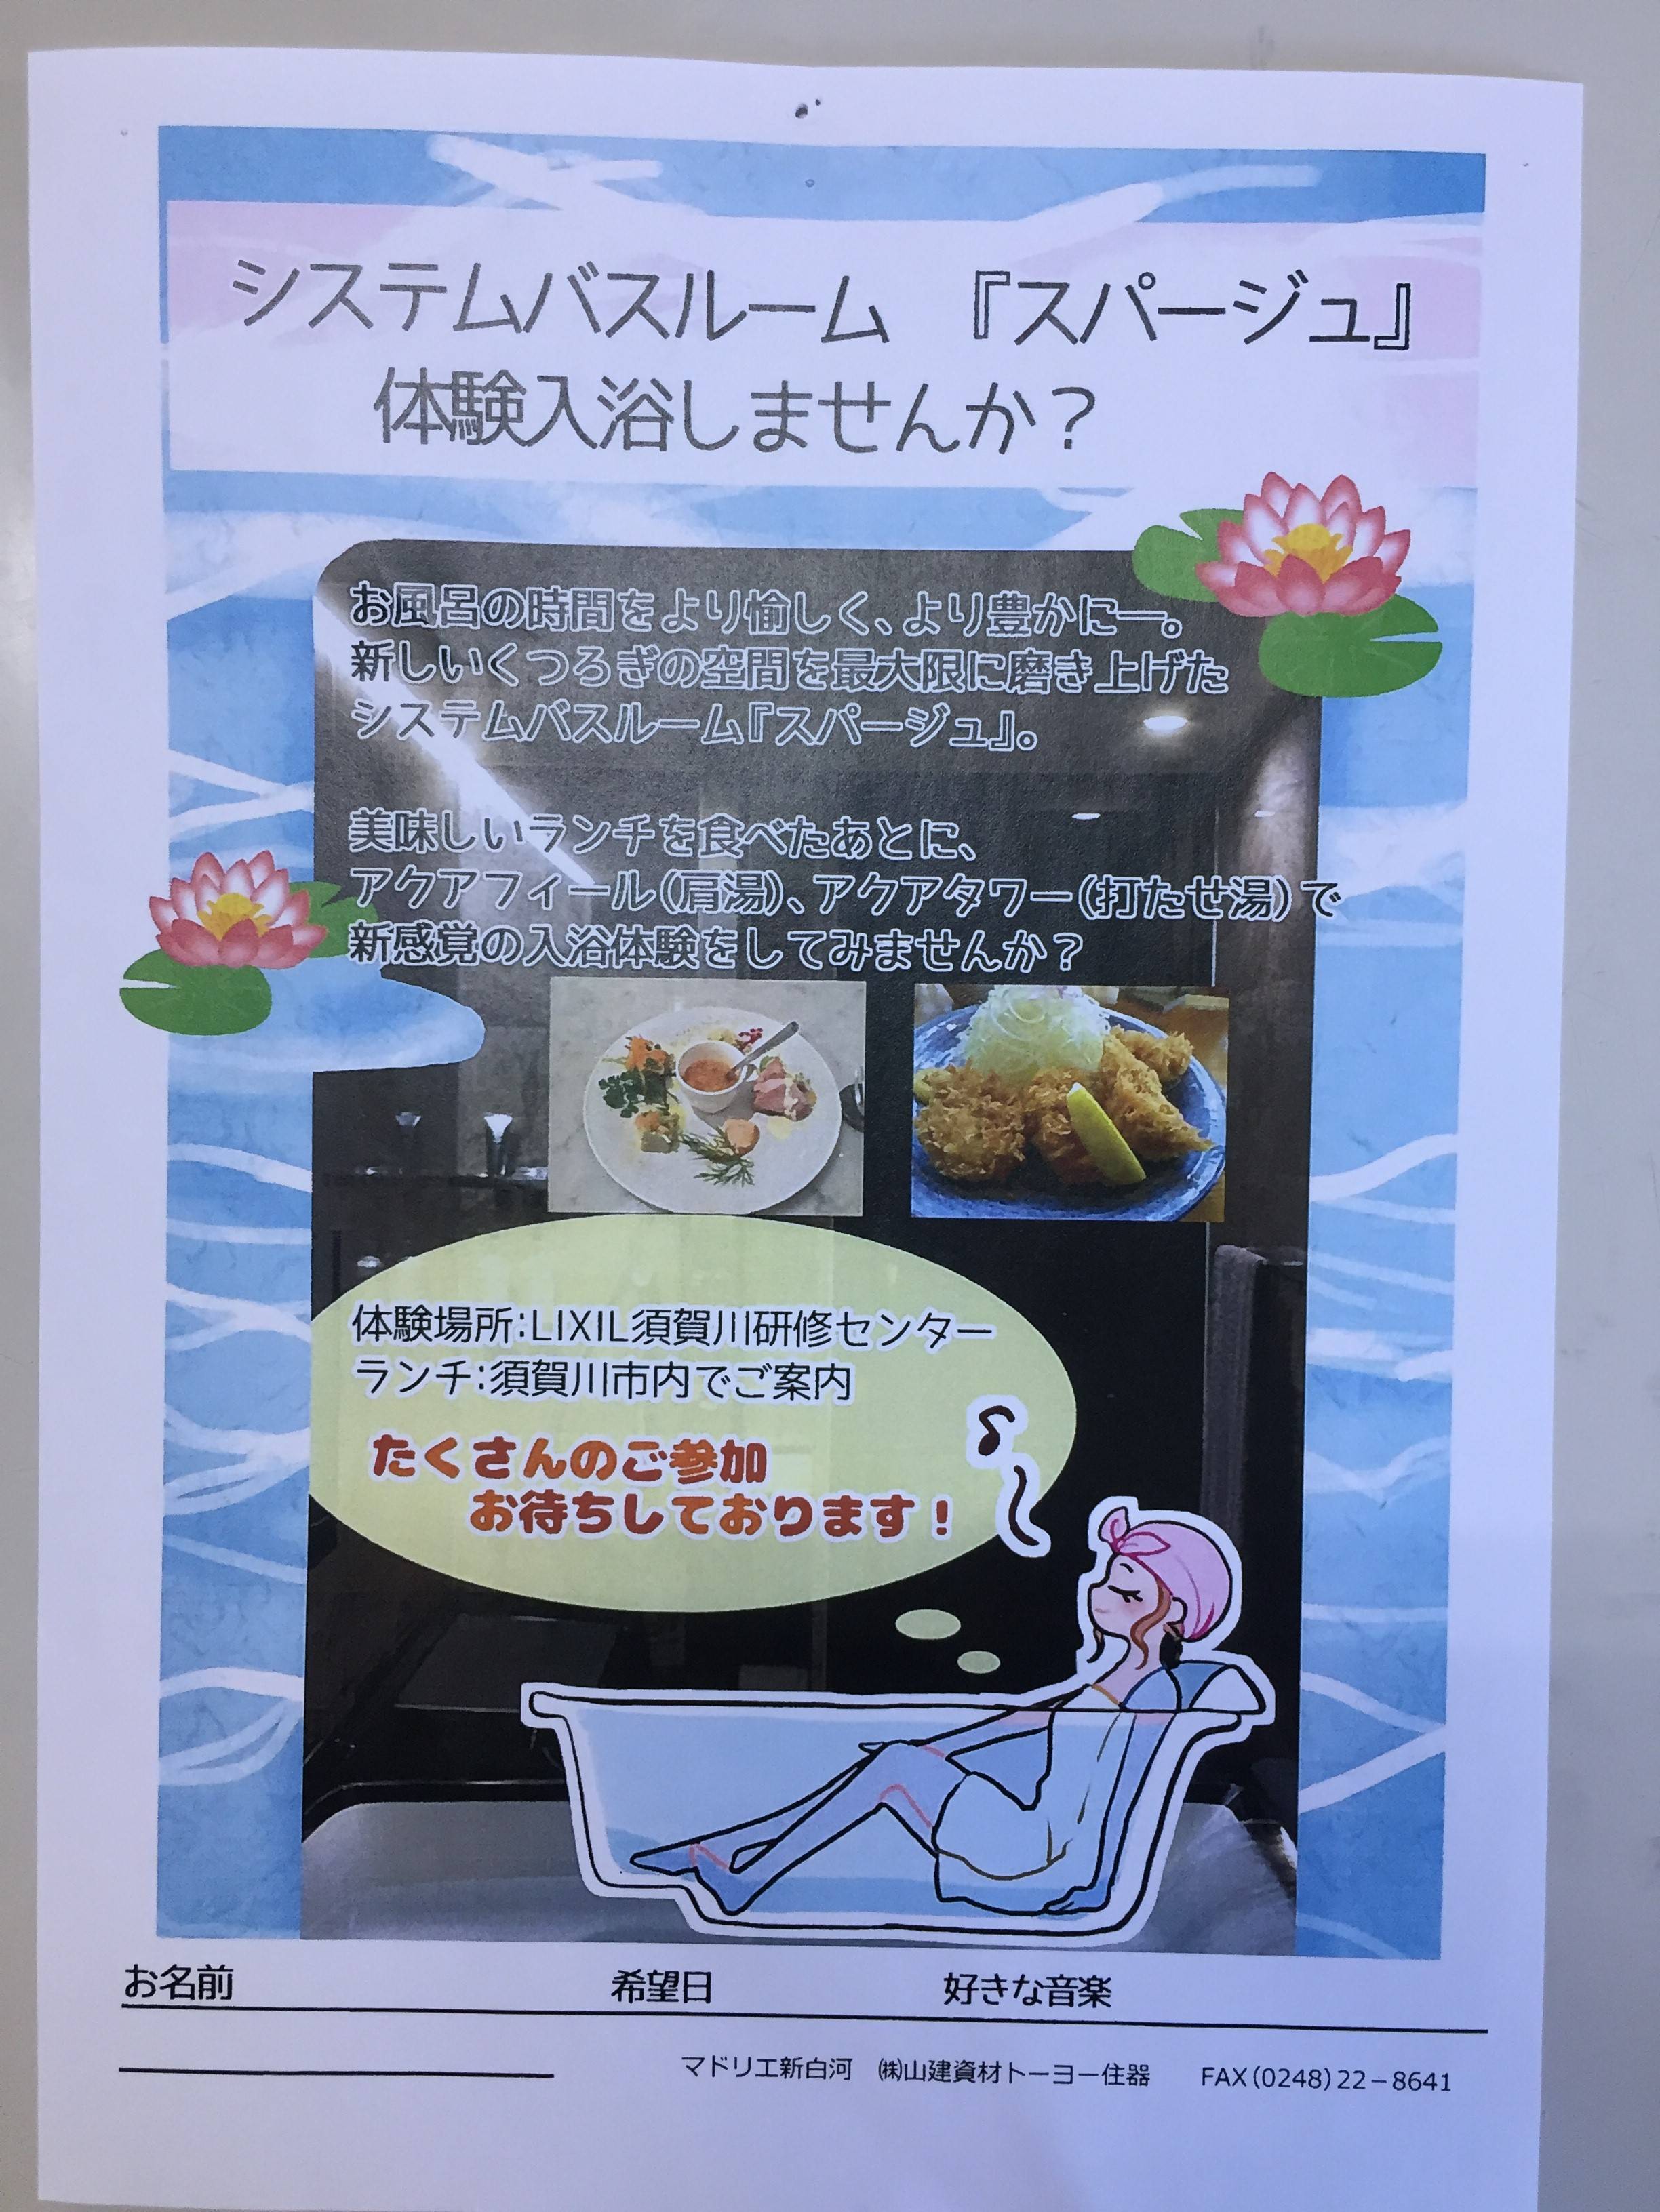 スパージュ入浴体験 FBT新白河店のイベントキャンペーン 写真1